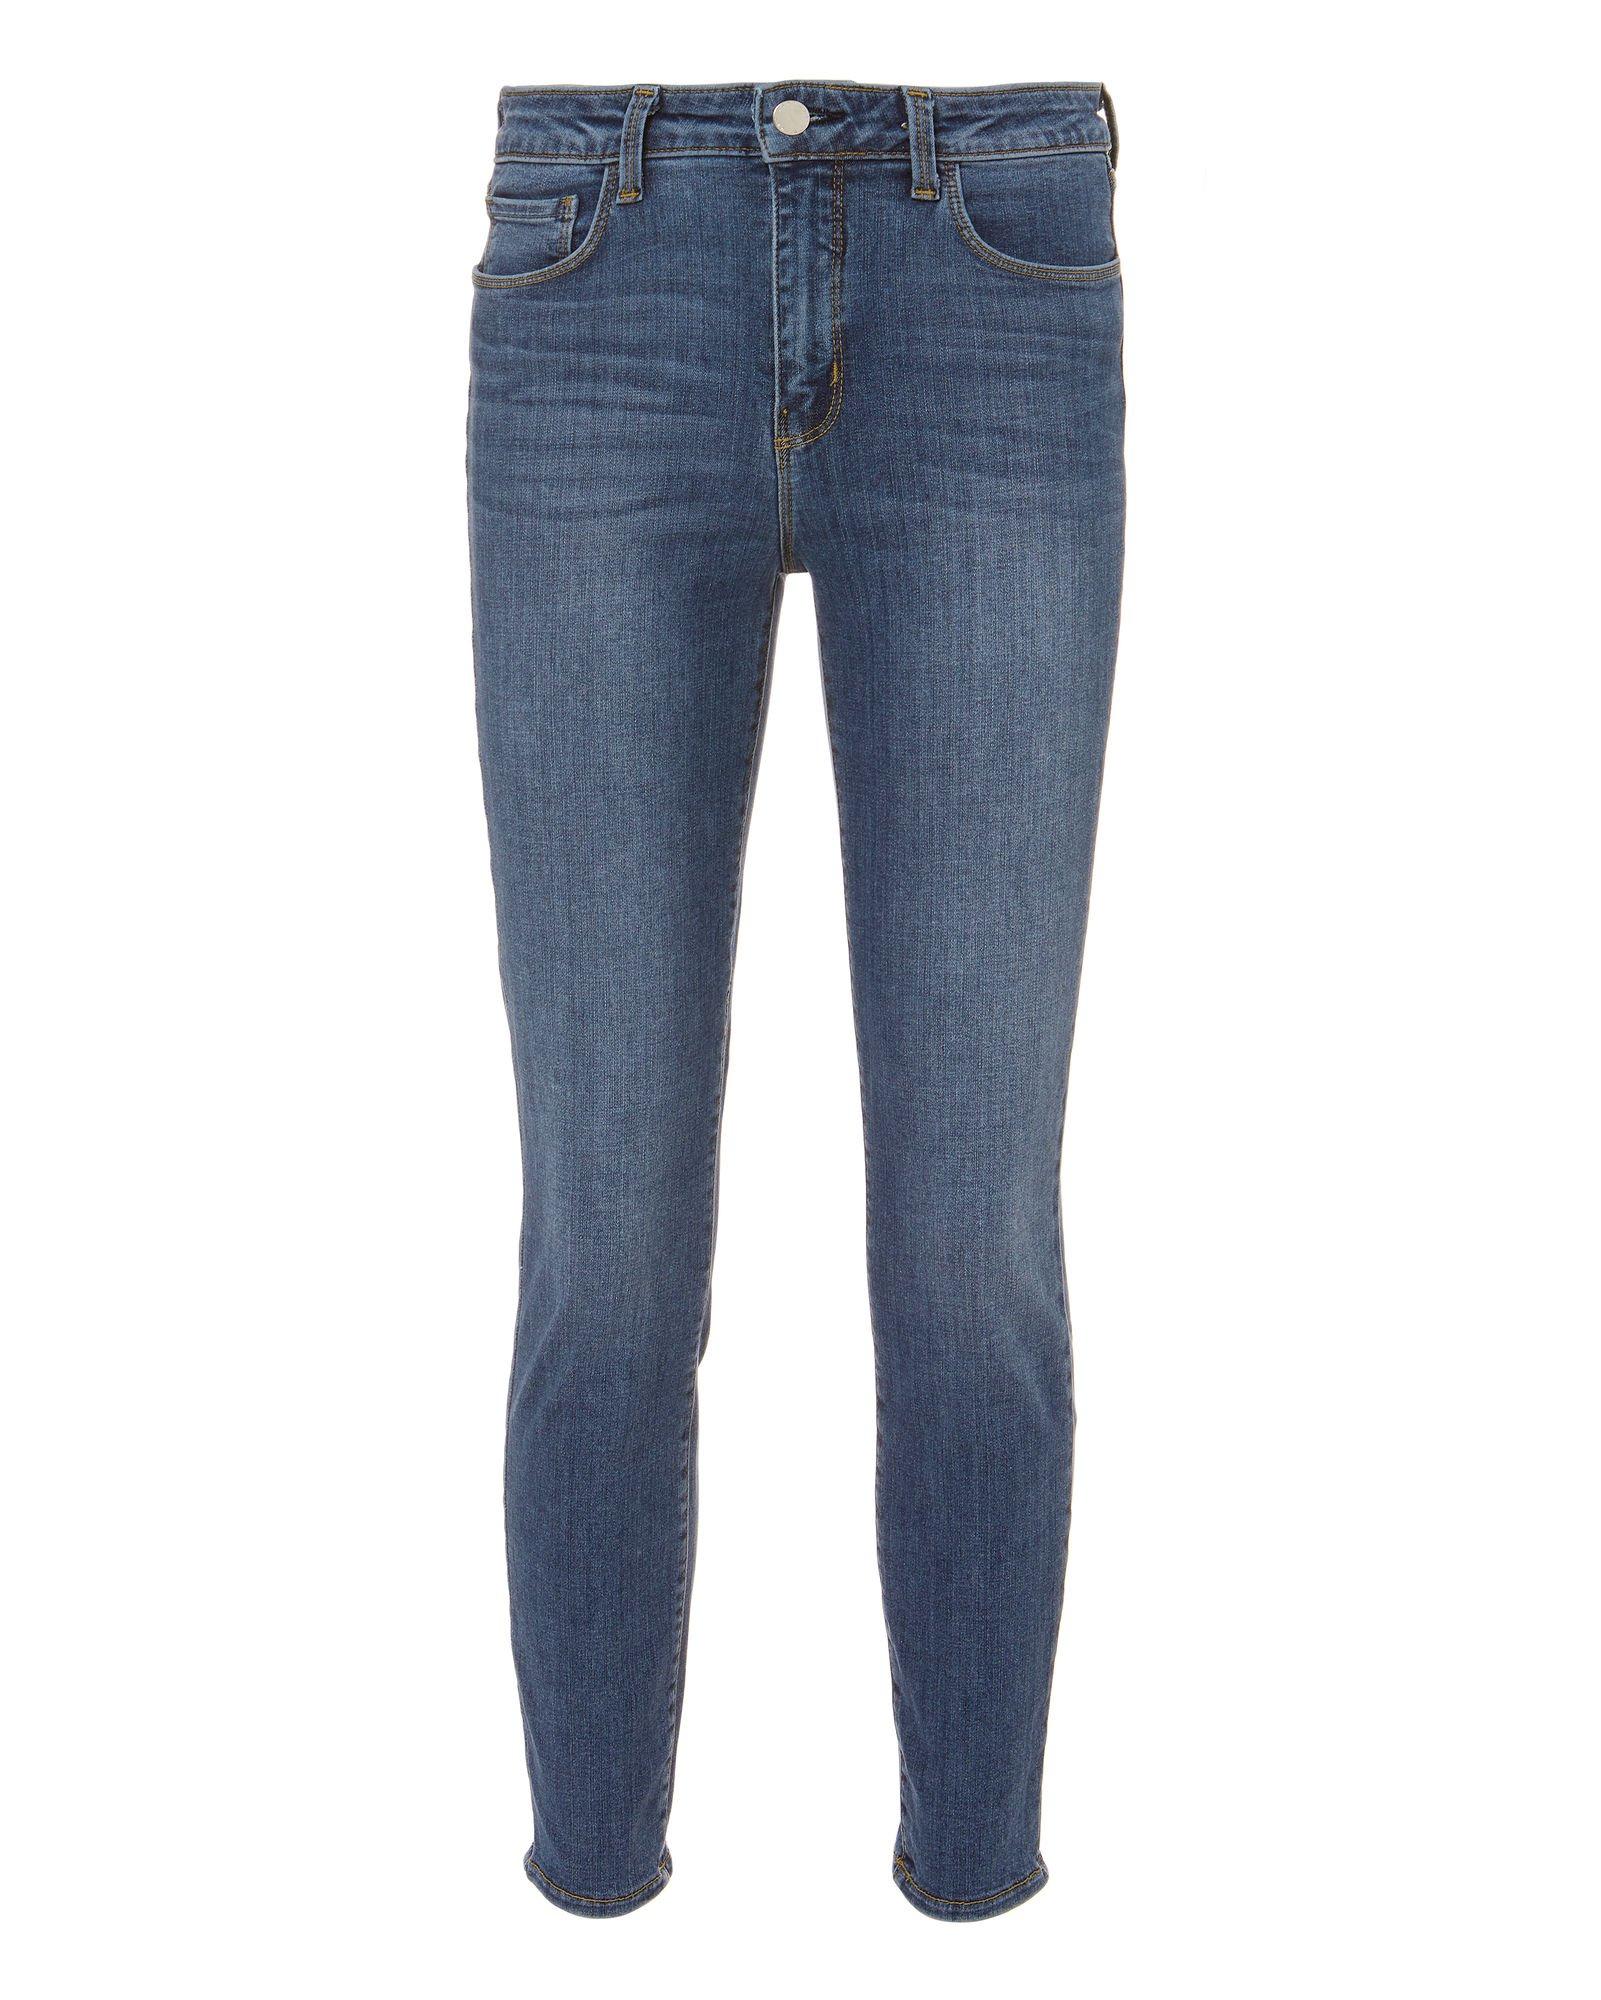 L Agence Margot Skinny Jeans In Light Vintage | ModeSens